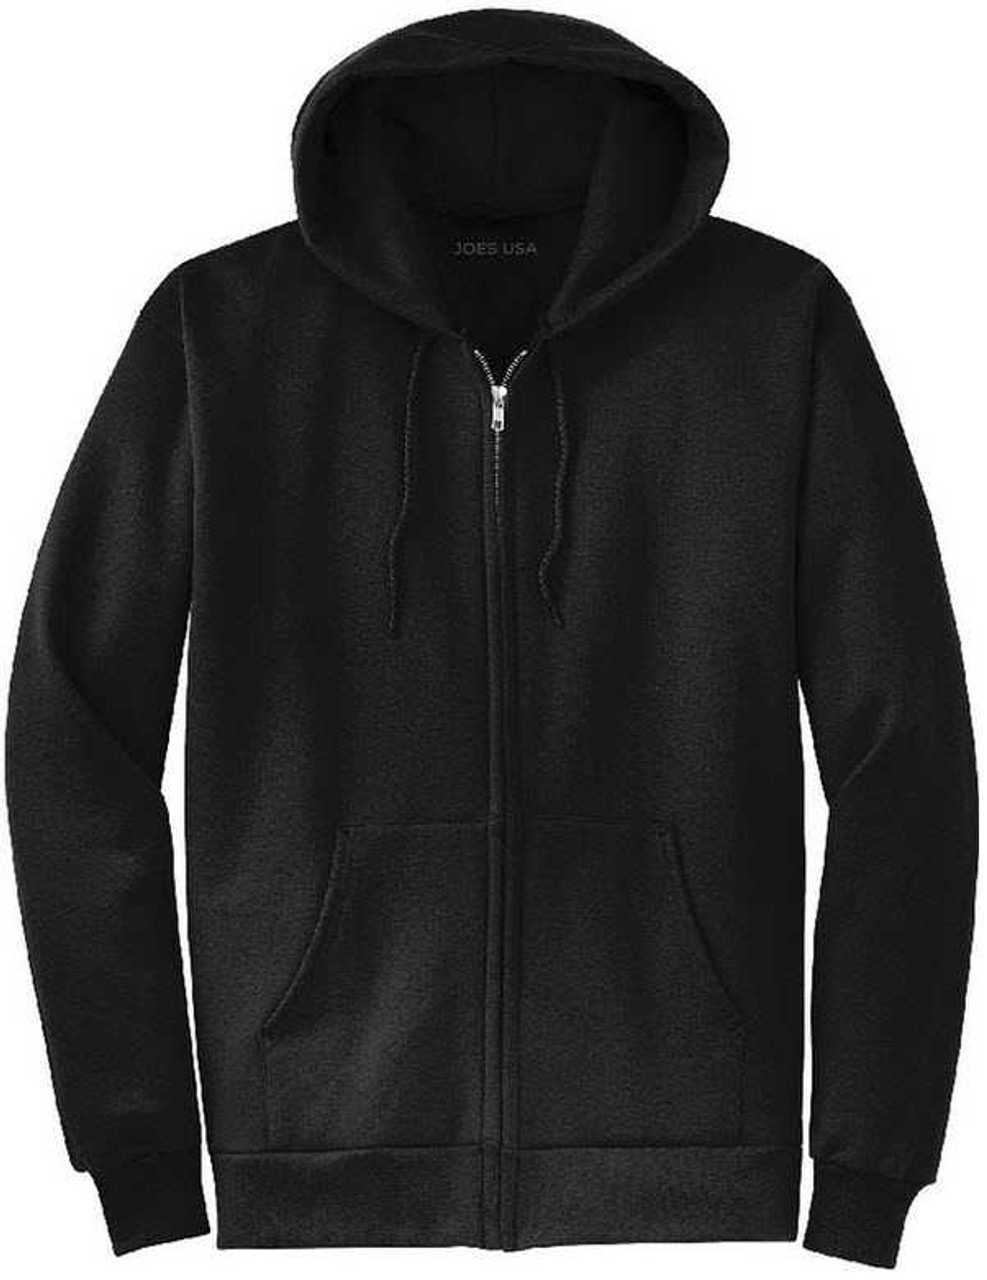 Mens Full Zip Hooded Sweatshirt NEON PINK Hoodie Hoody Sizes S-4XL  Cotton/Poly